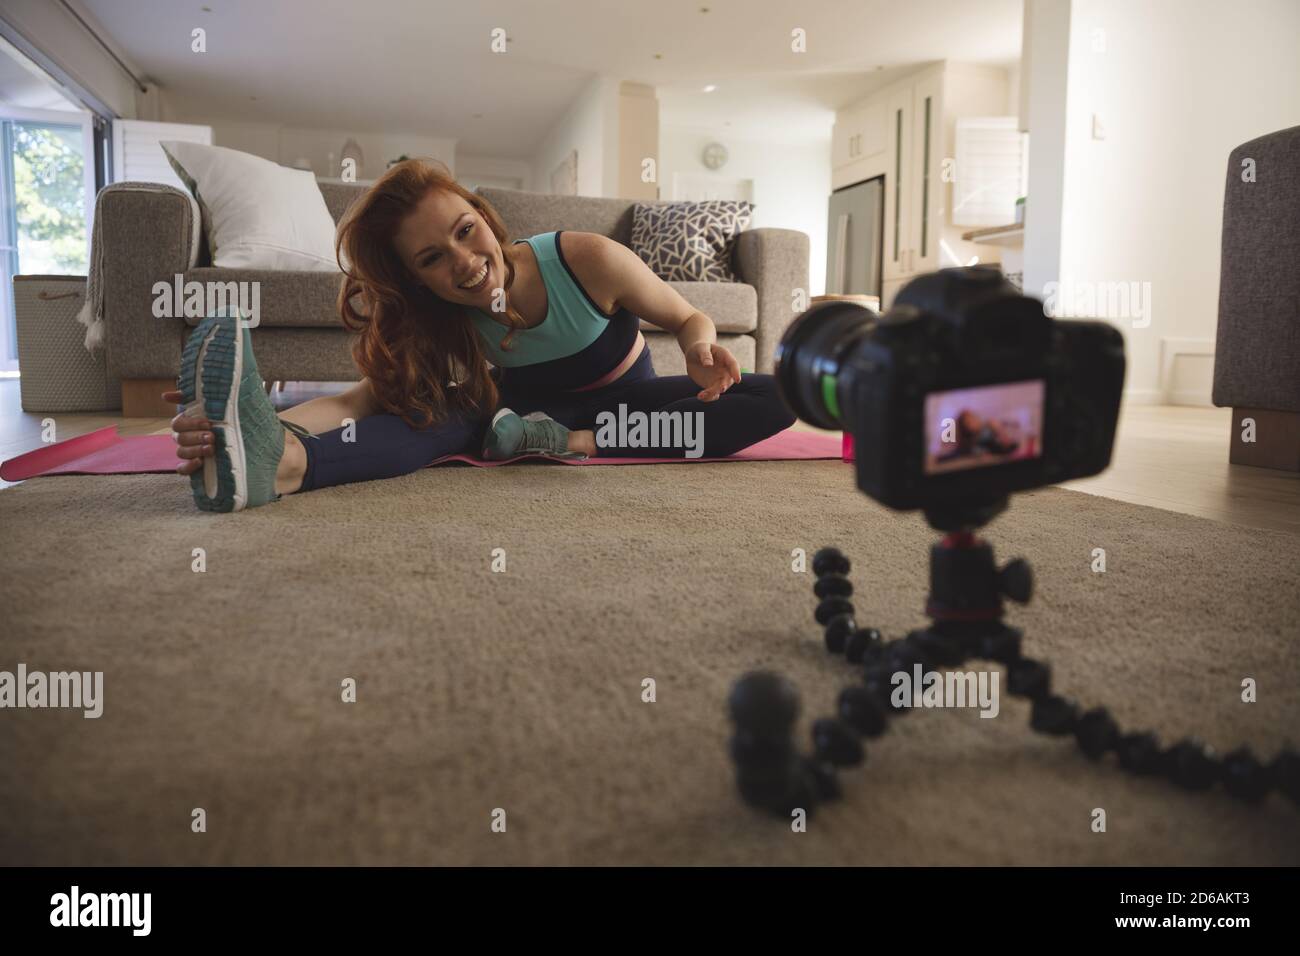 Donna che esegue esercizio stretching mentre si guarda la fotocamera digitale a. casa Foto Stock